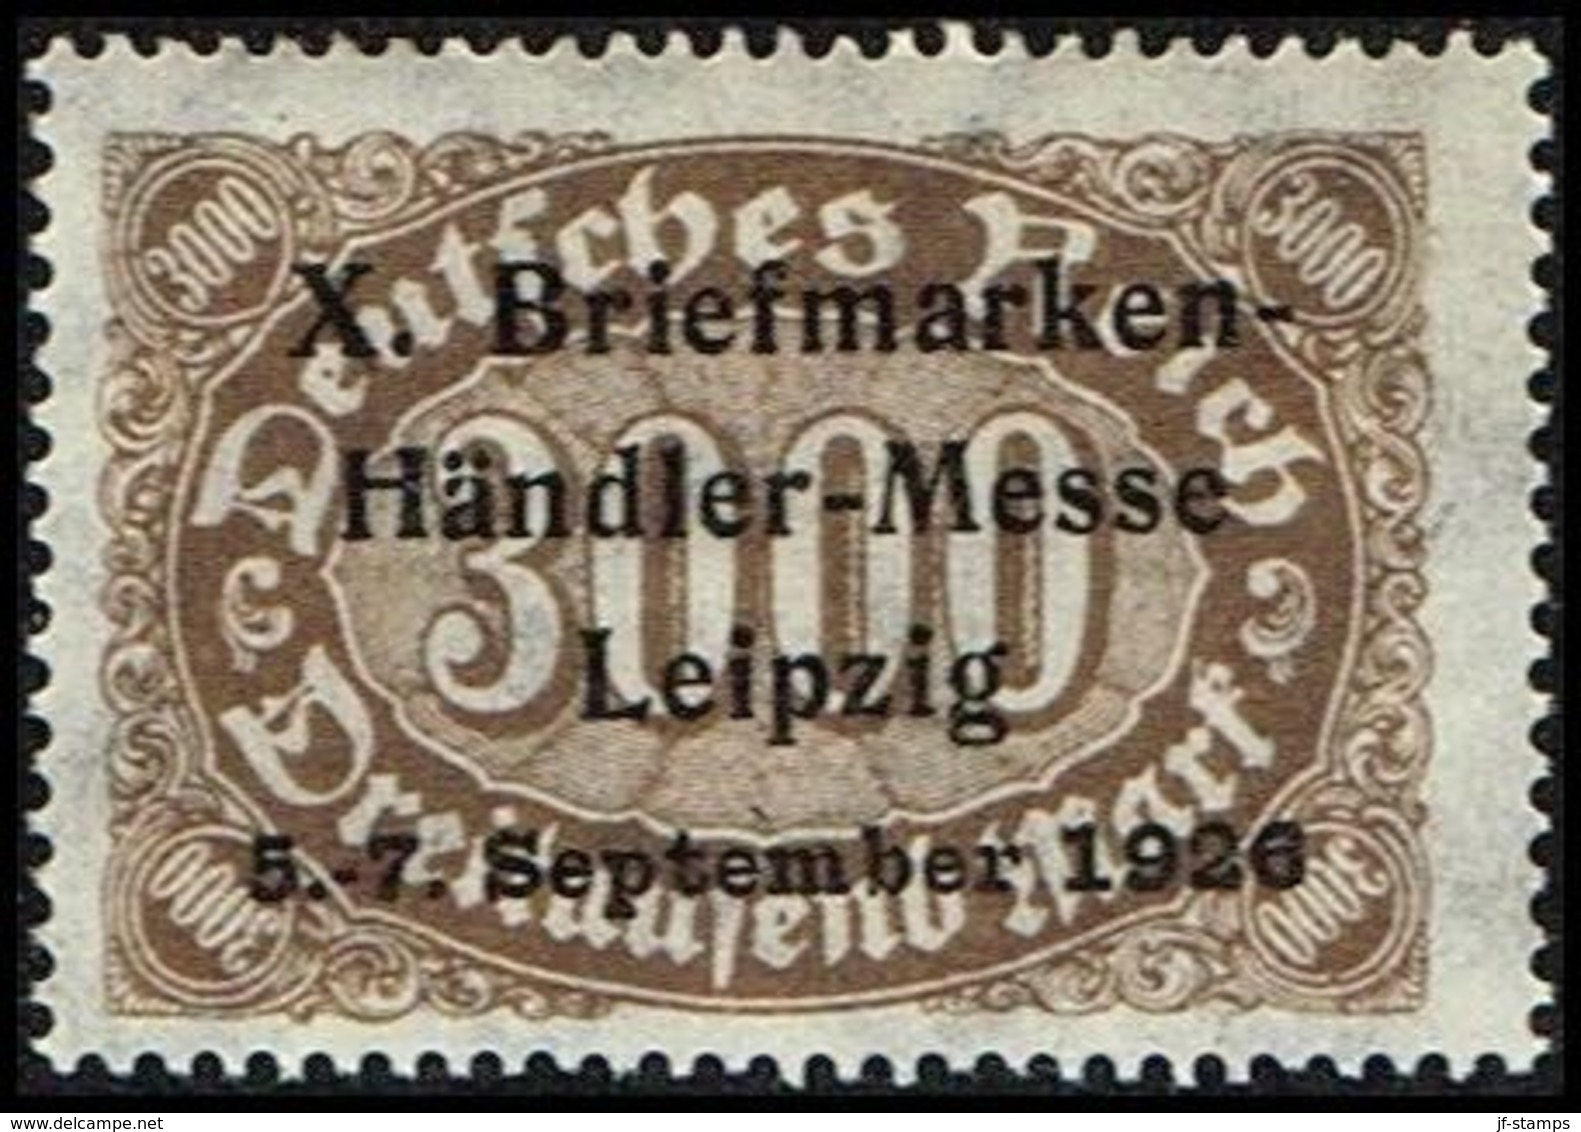 1926. Deutsches Reich 3000 Mark X. Briefmarken- Handler-Messe Leipzig 5.-7. September... (Michel 254) - JF361016 - Abarten & Kuriositäten